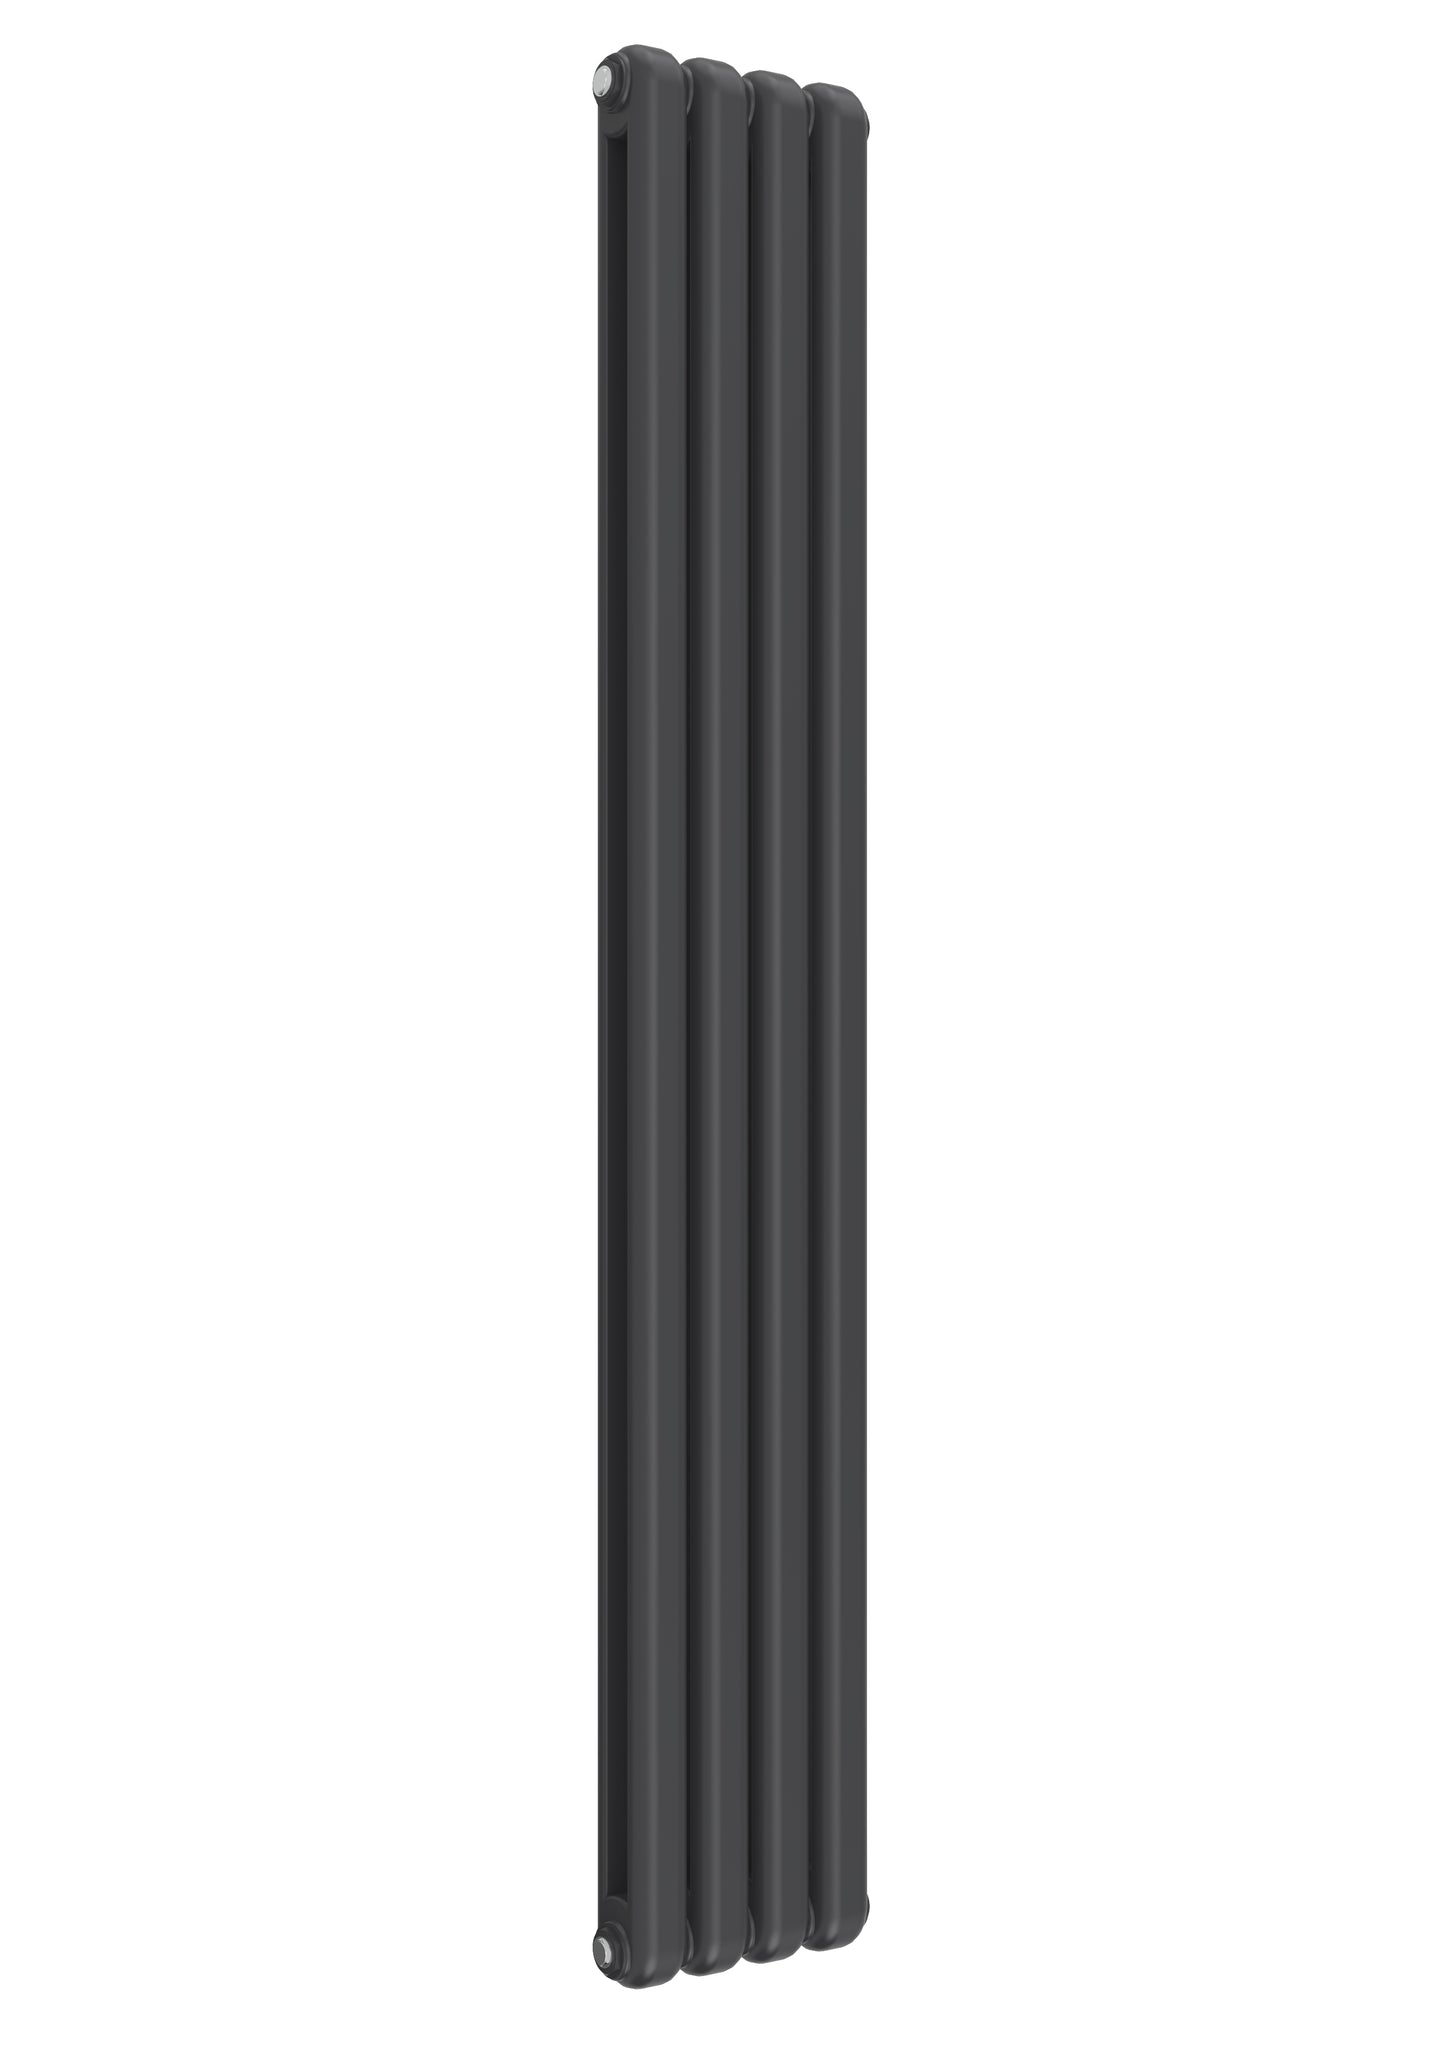 Coneva Vertical Column Radiator - Various Sizes- Anthracite